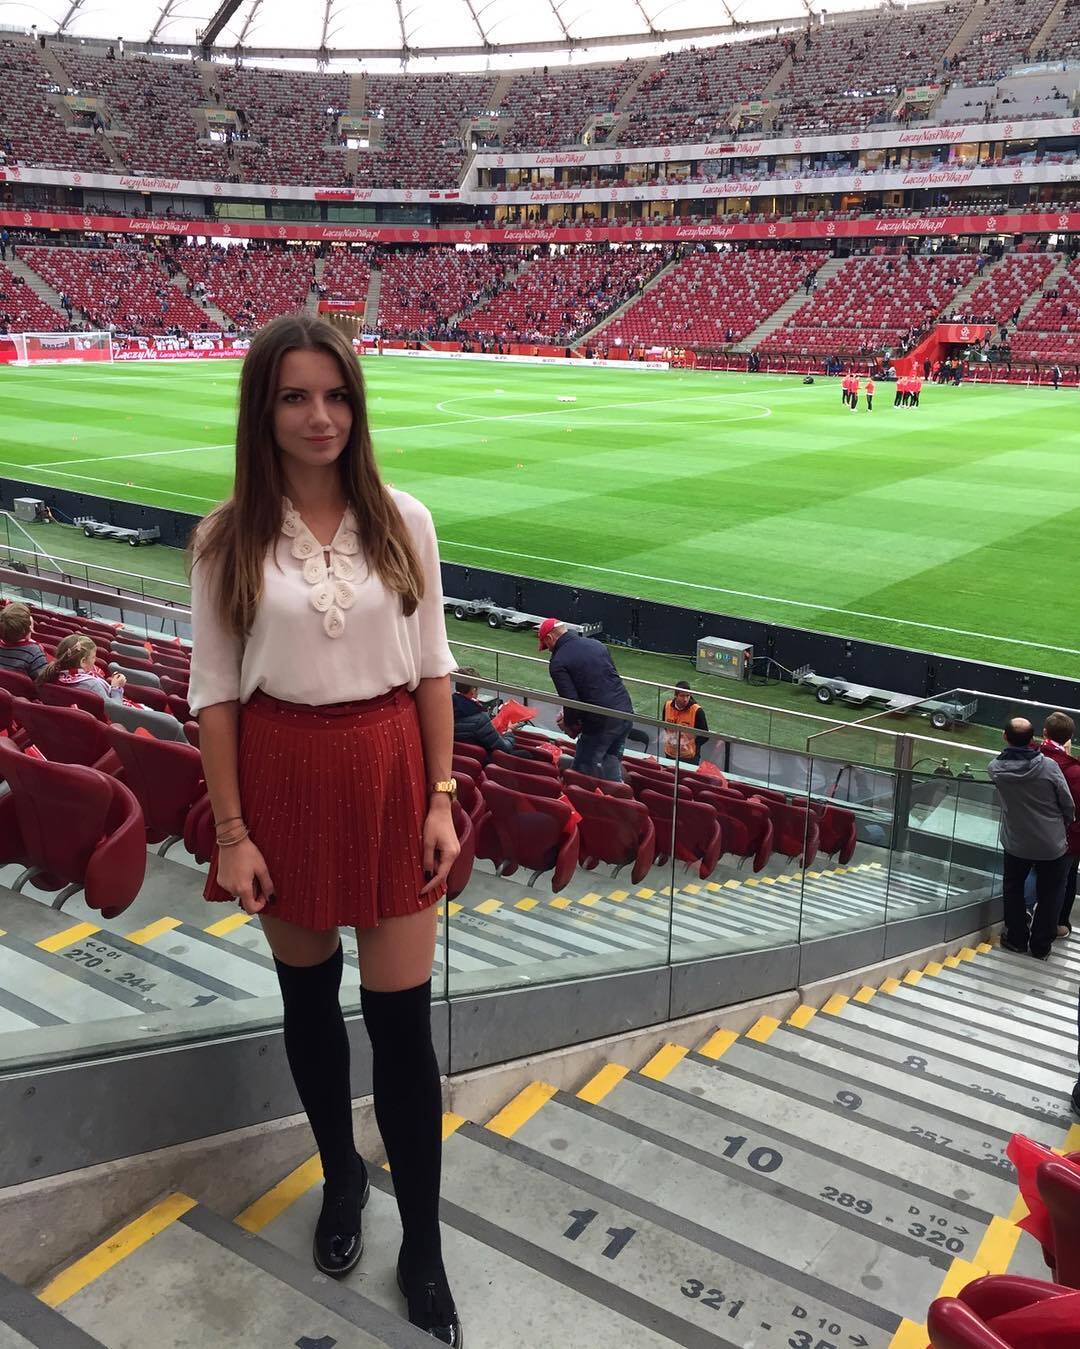 Двадцятирічна дівчина-арбітр із Польщі вразила мережу своєю зовнішністю